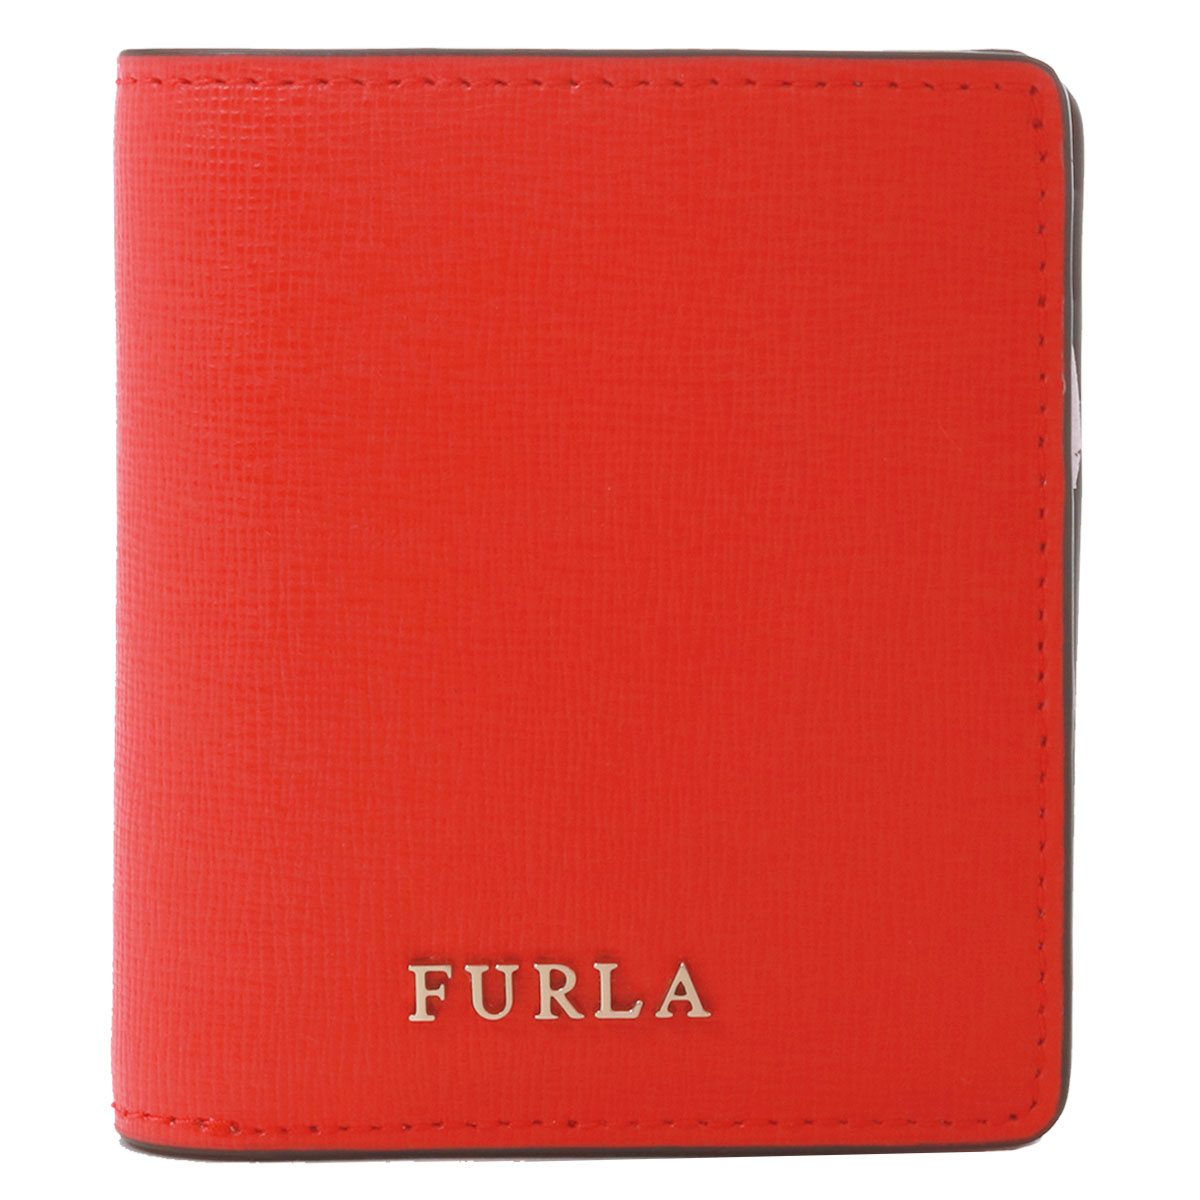 フルラ 二つ折り財布 バビロン レディース PR74 FURLA | 本革 レザー 